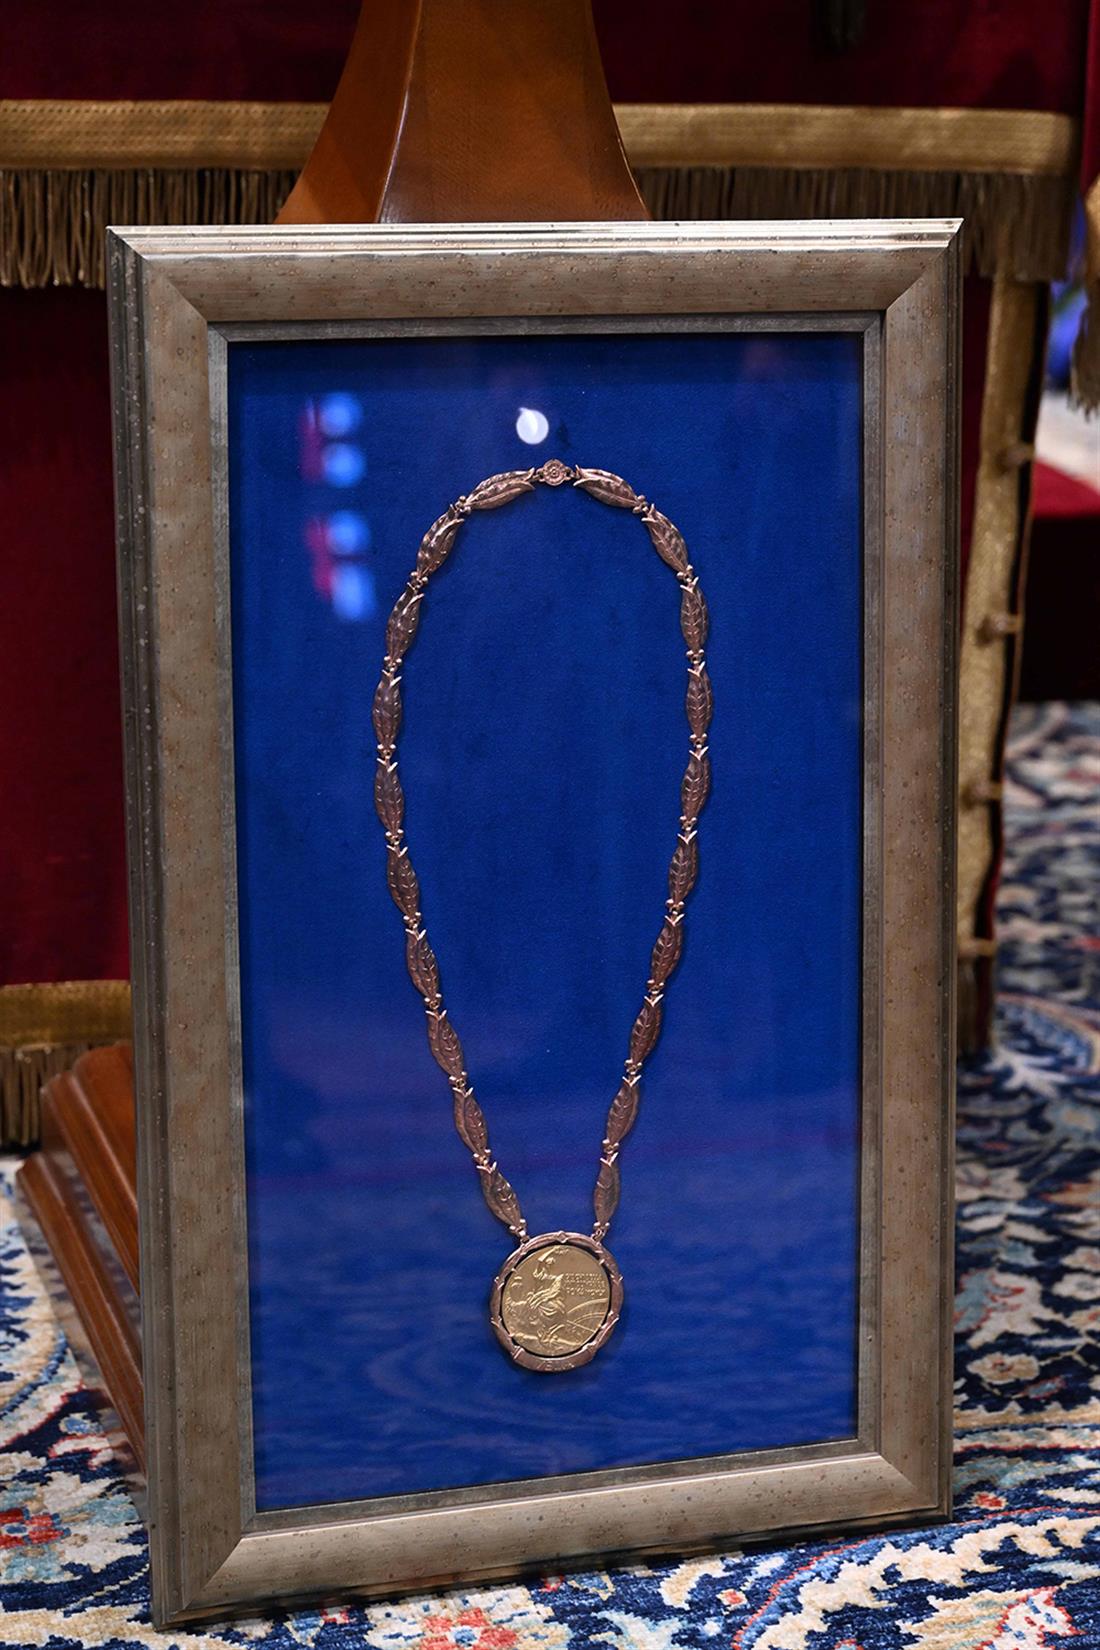 Κηδεία - Τέως Βασιλιάς Κωνσταντίνος - Ολυμπιακό μετάλλιο - παράσημα